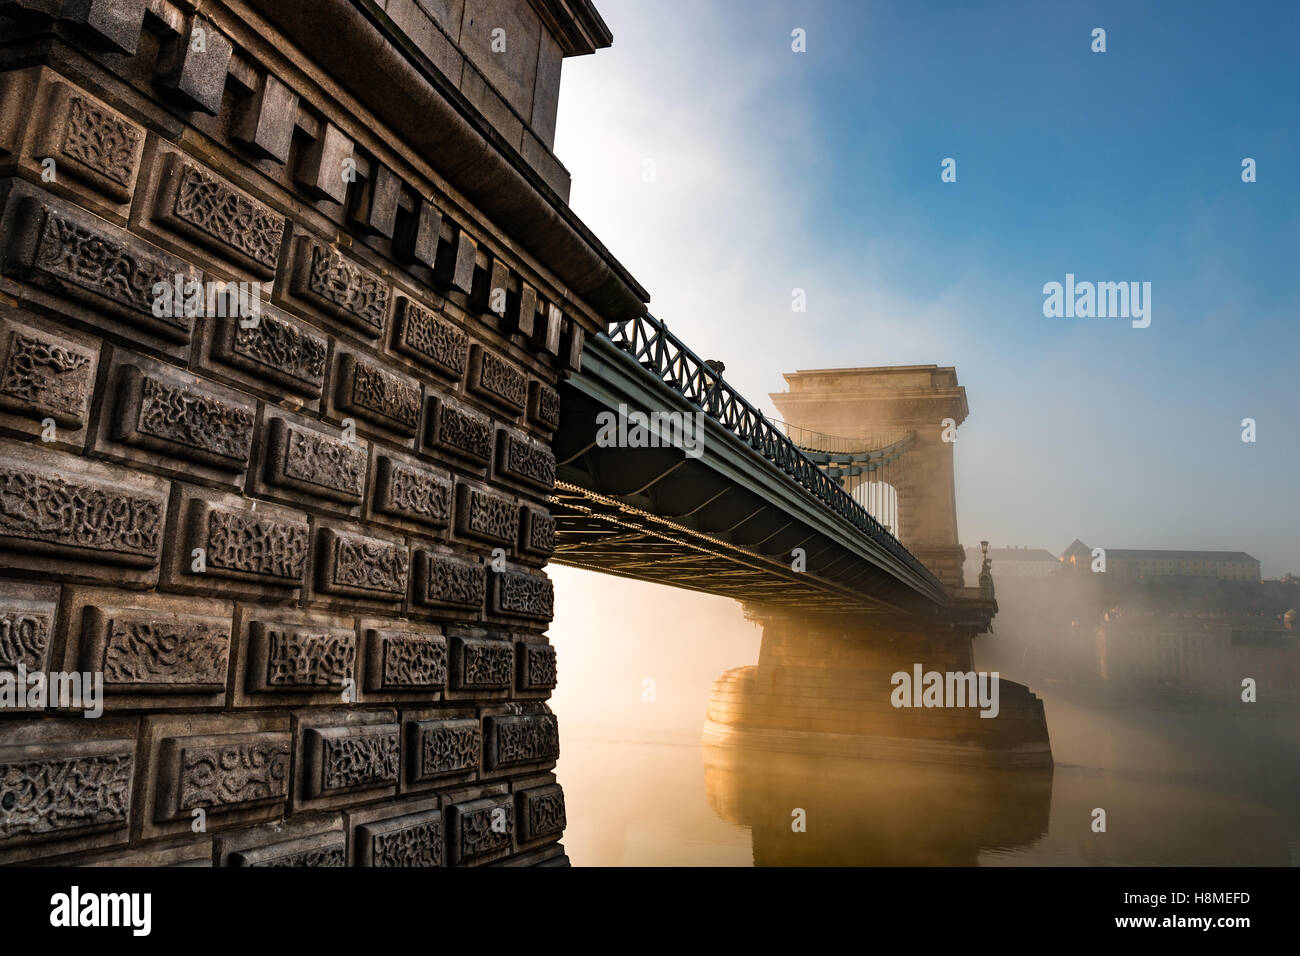 Il ponte della catena nella capitale Hyngarian - Budapest durind la mattinata nebbiosa dopo l'alba Foto Stock